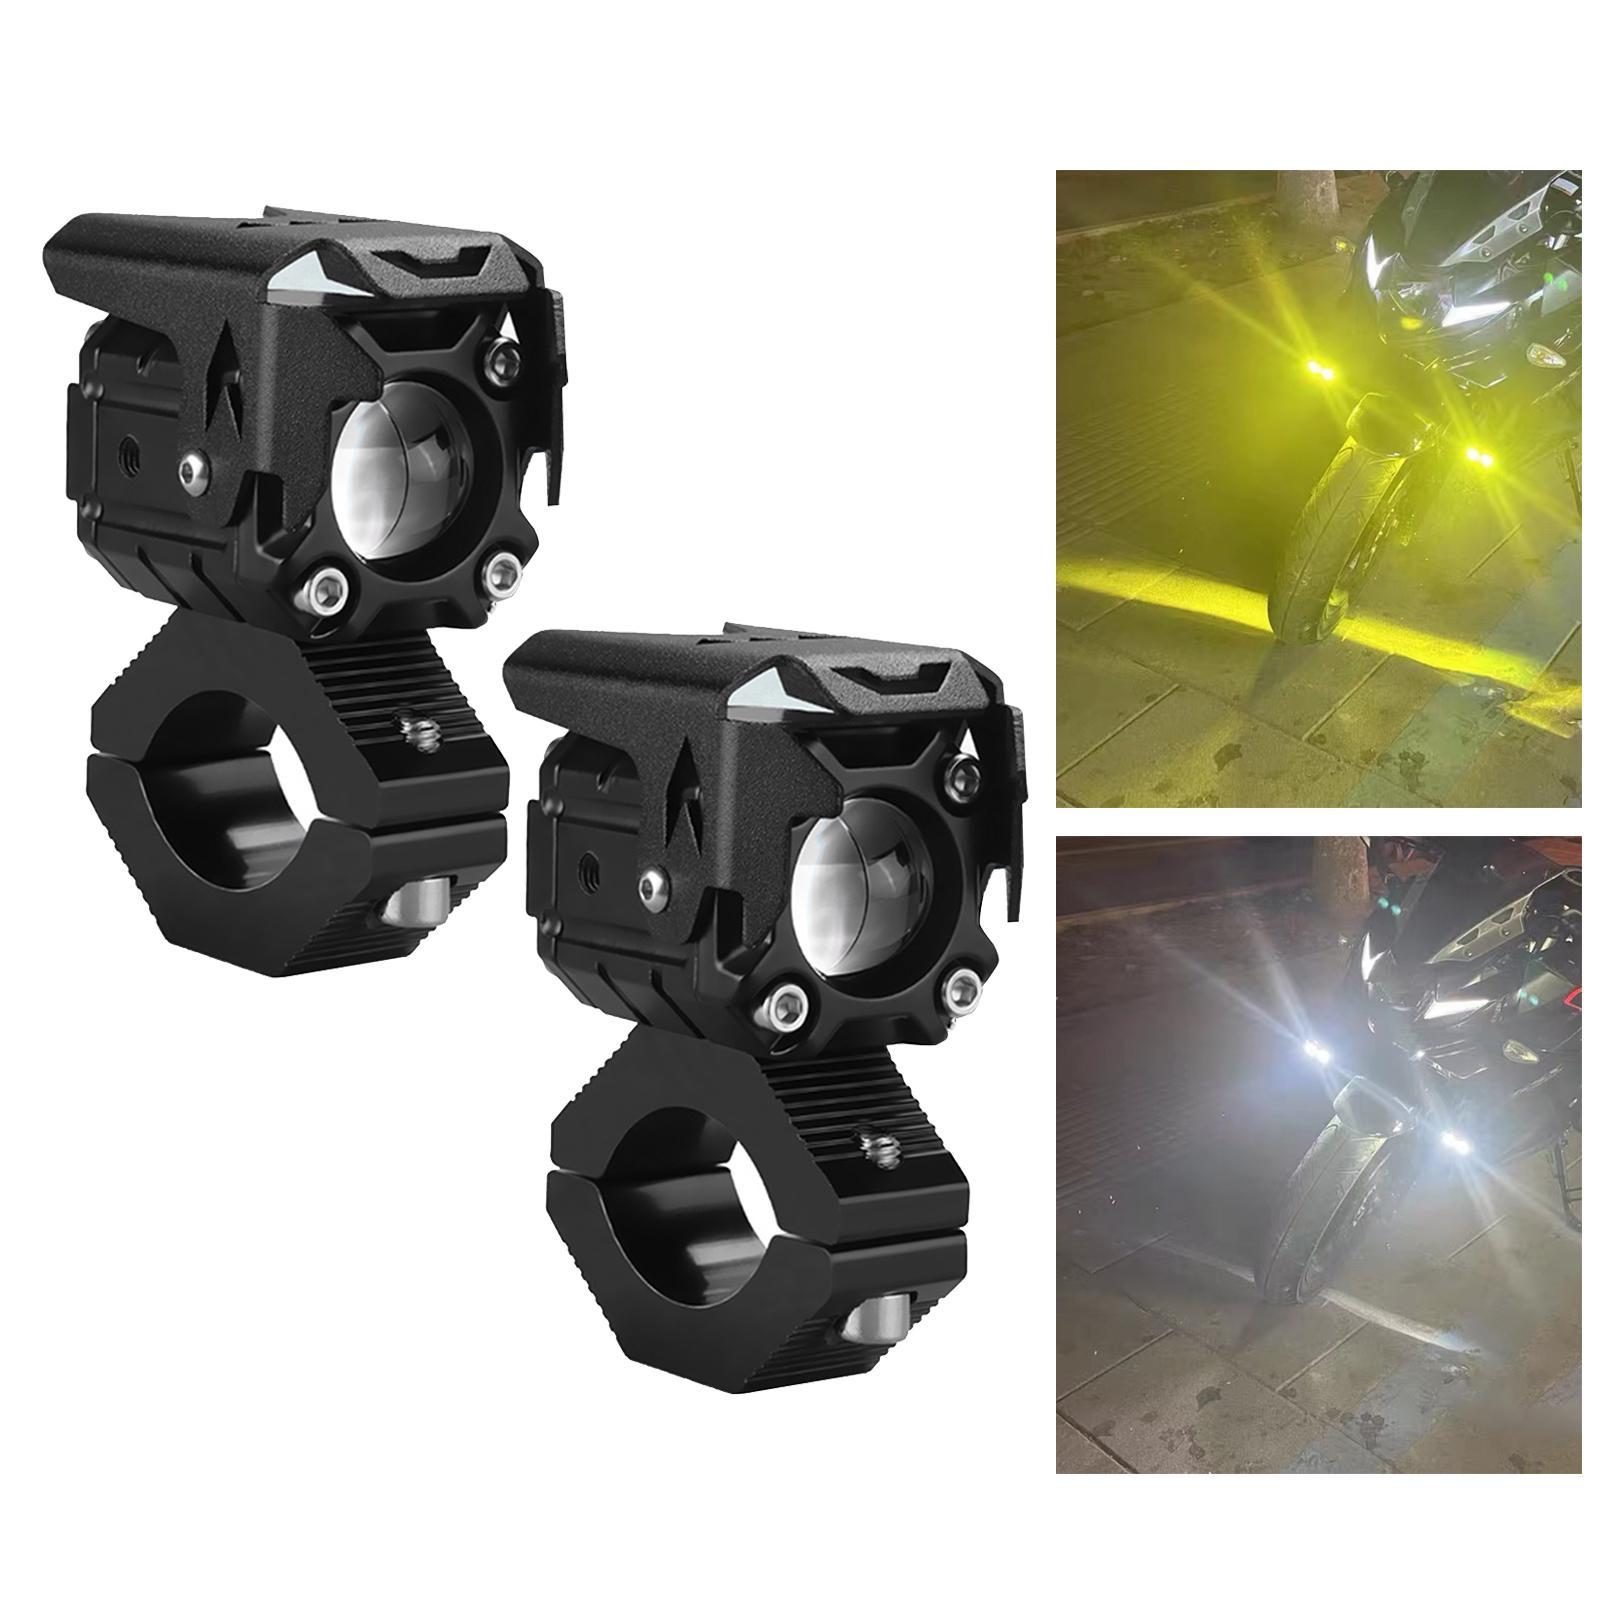 Motorcycle LED Spotlight Headlight, Fog Lamp for Motorbike Architectural Lighting